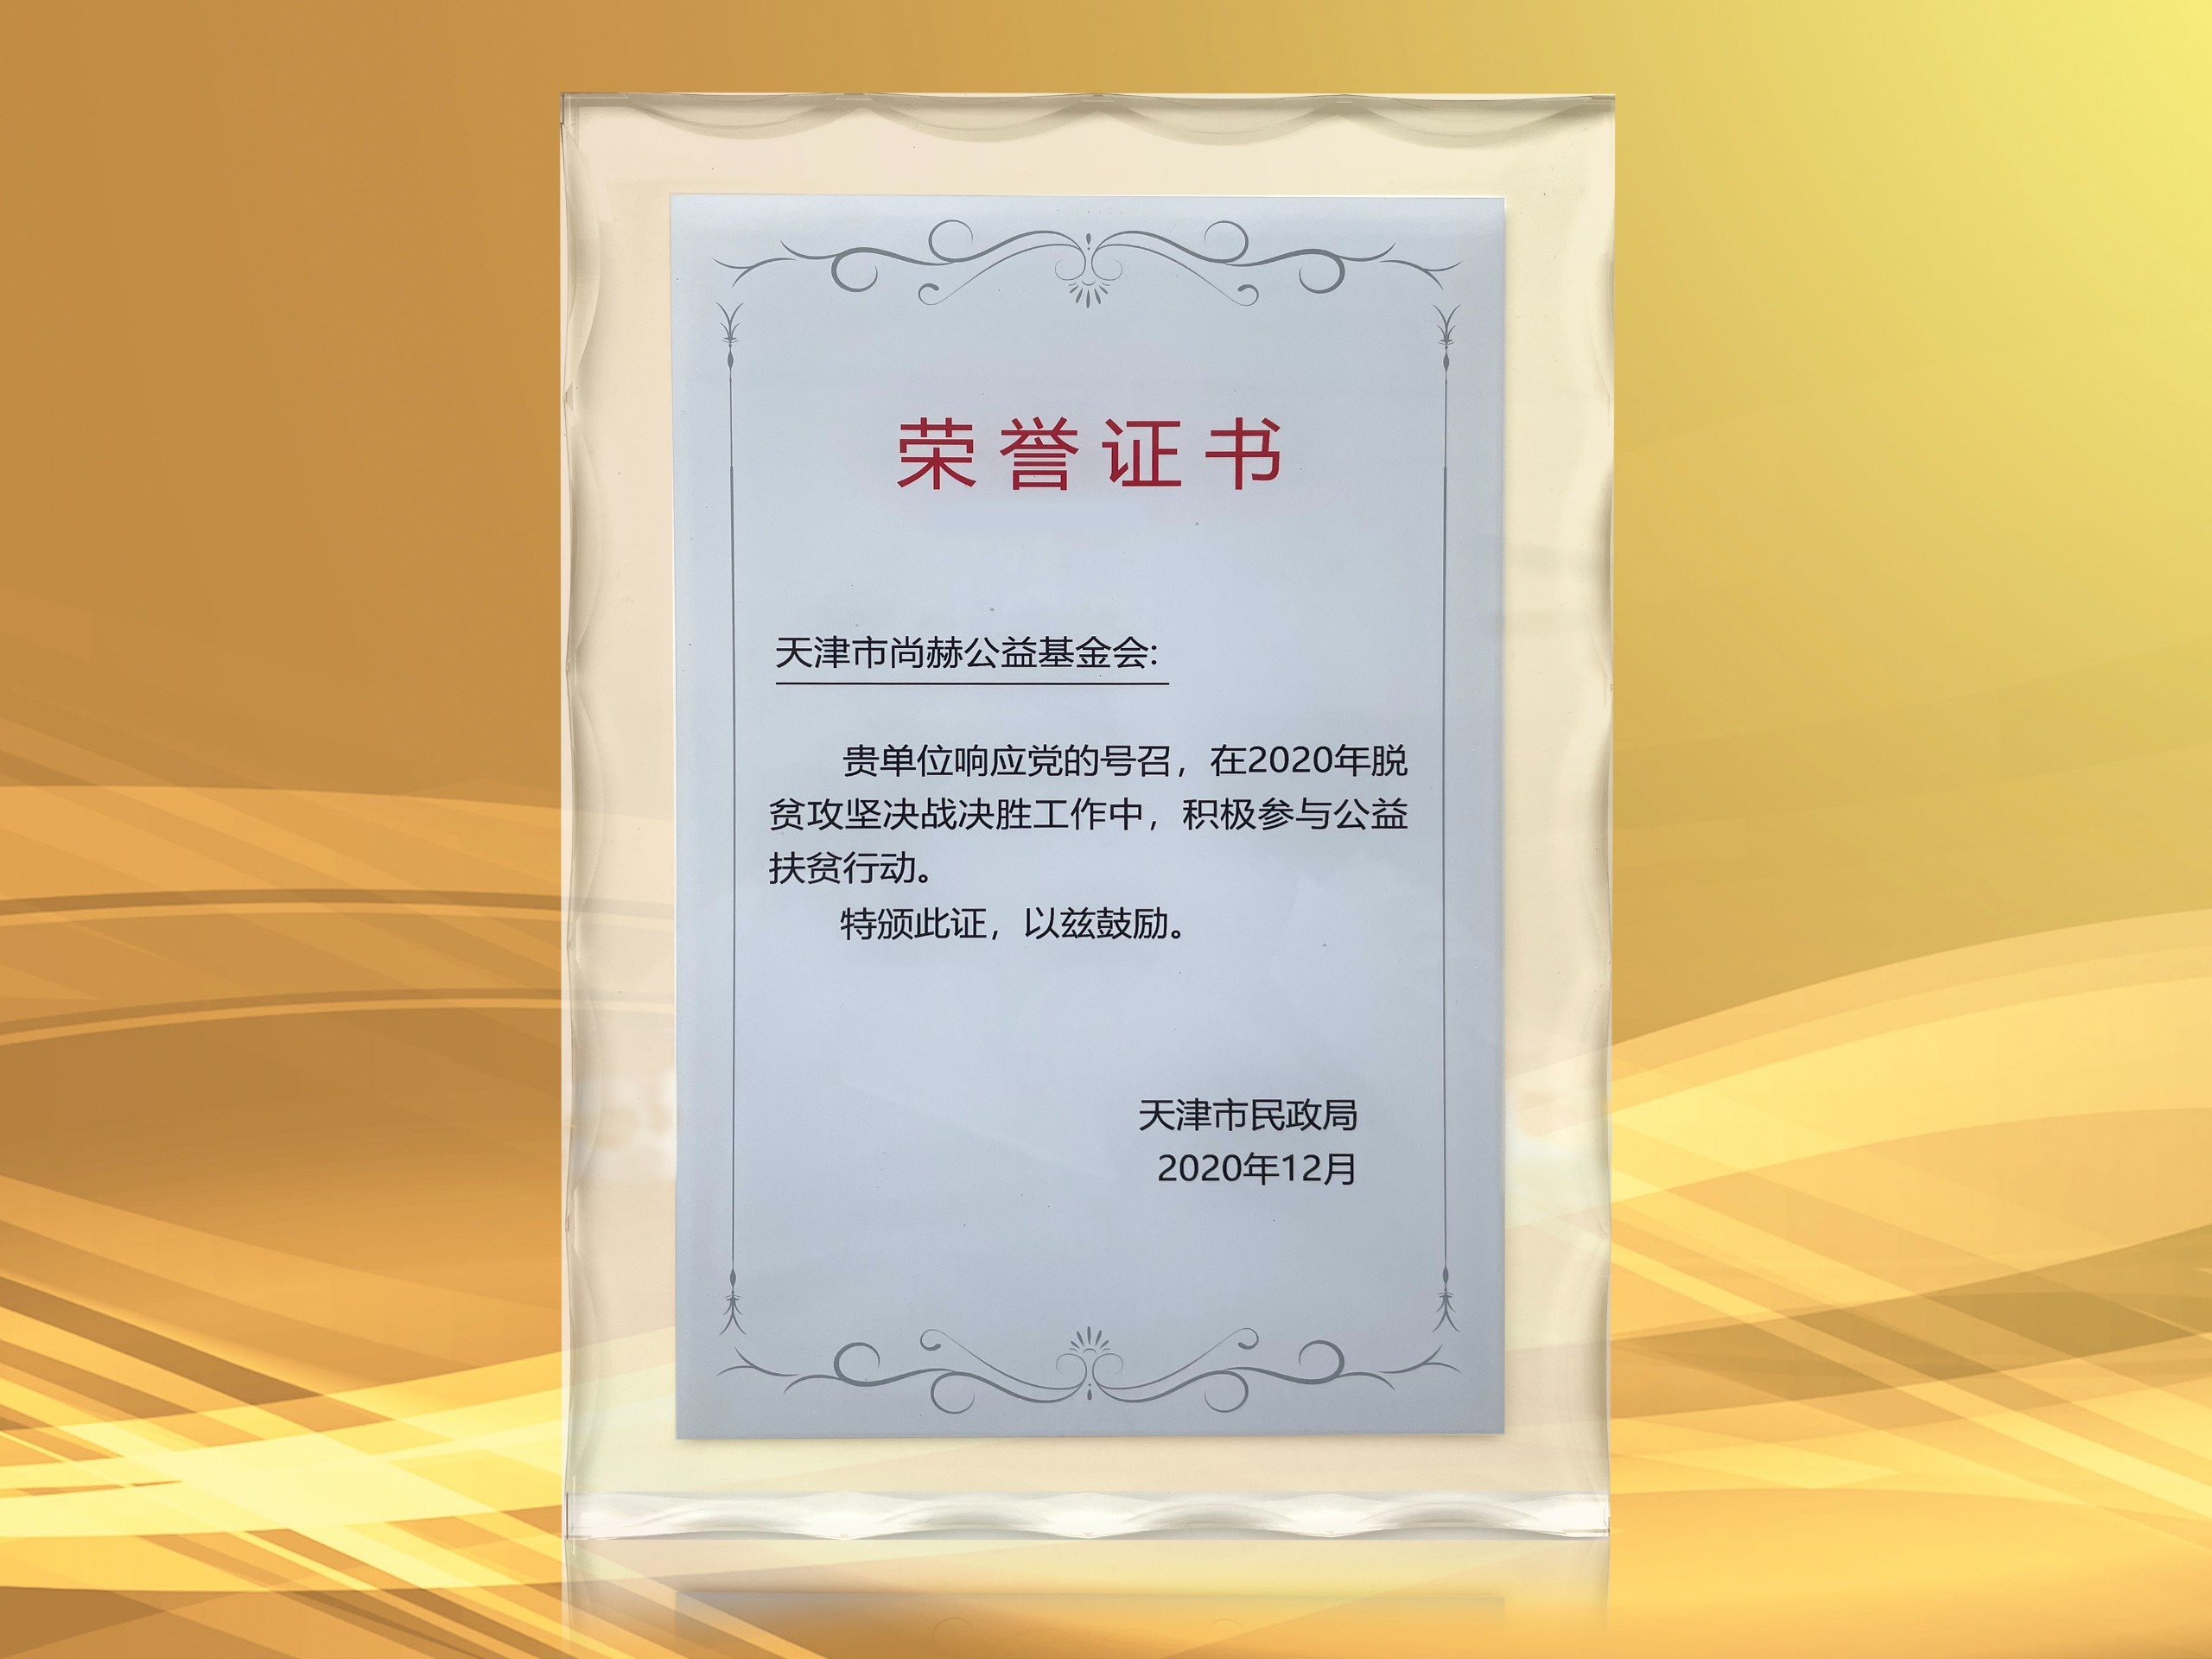 3月-正规的十大网投实体平台(中国)有限公司公益基金会获得天津市民政局颁发的荣誉证书